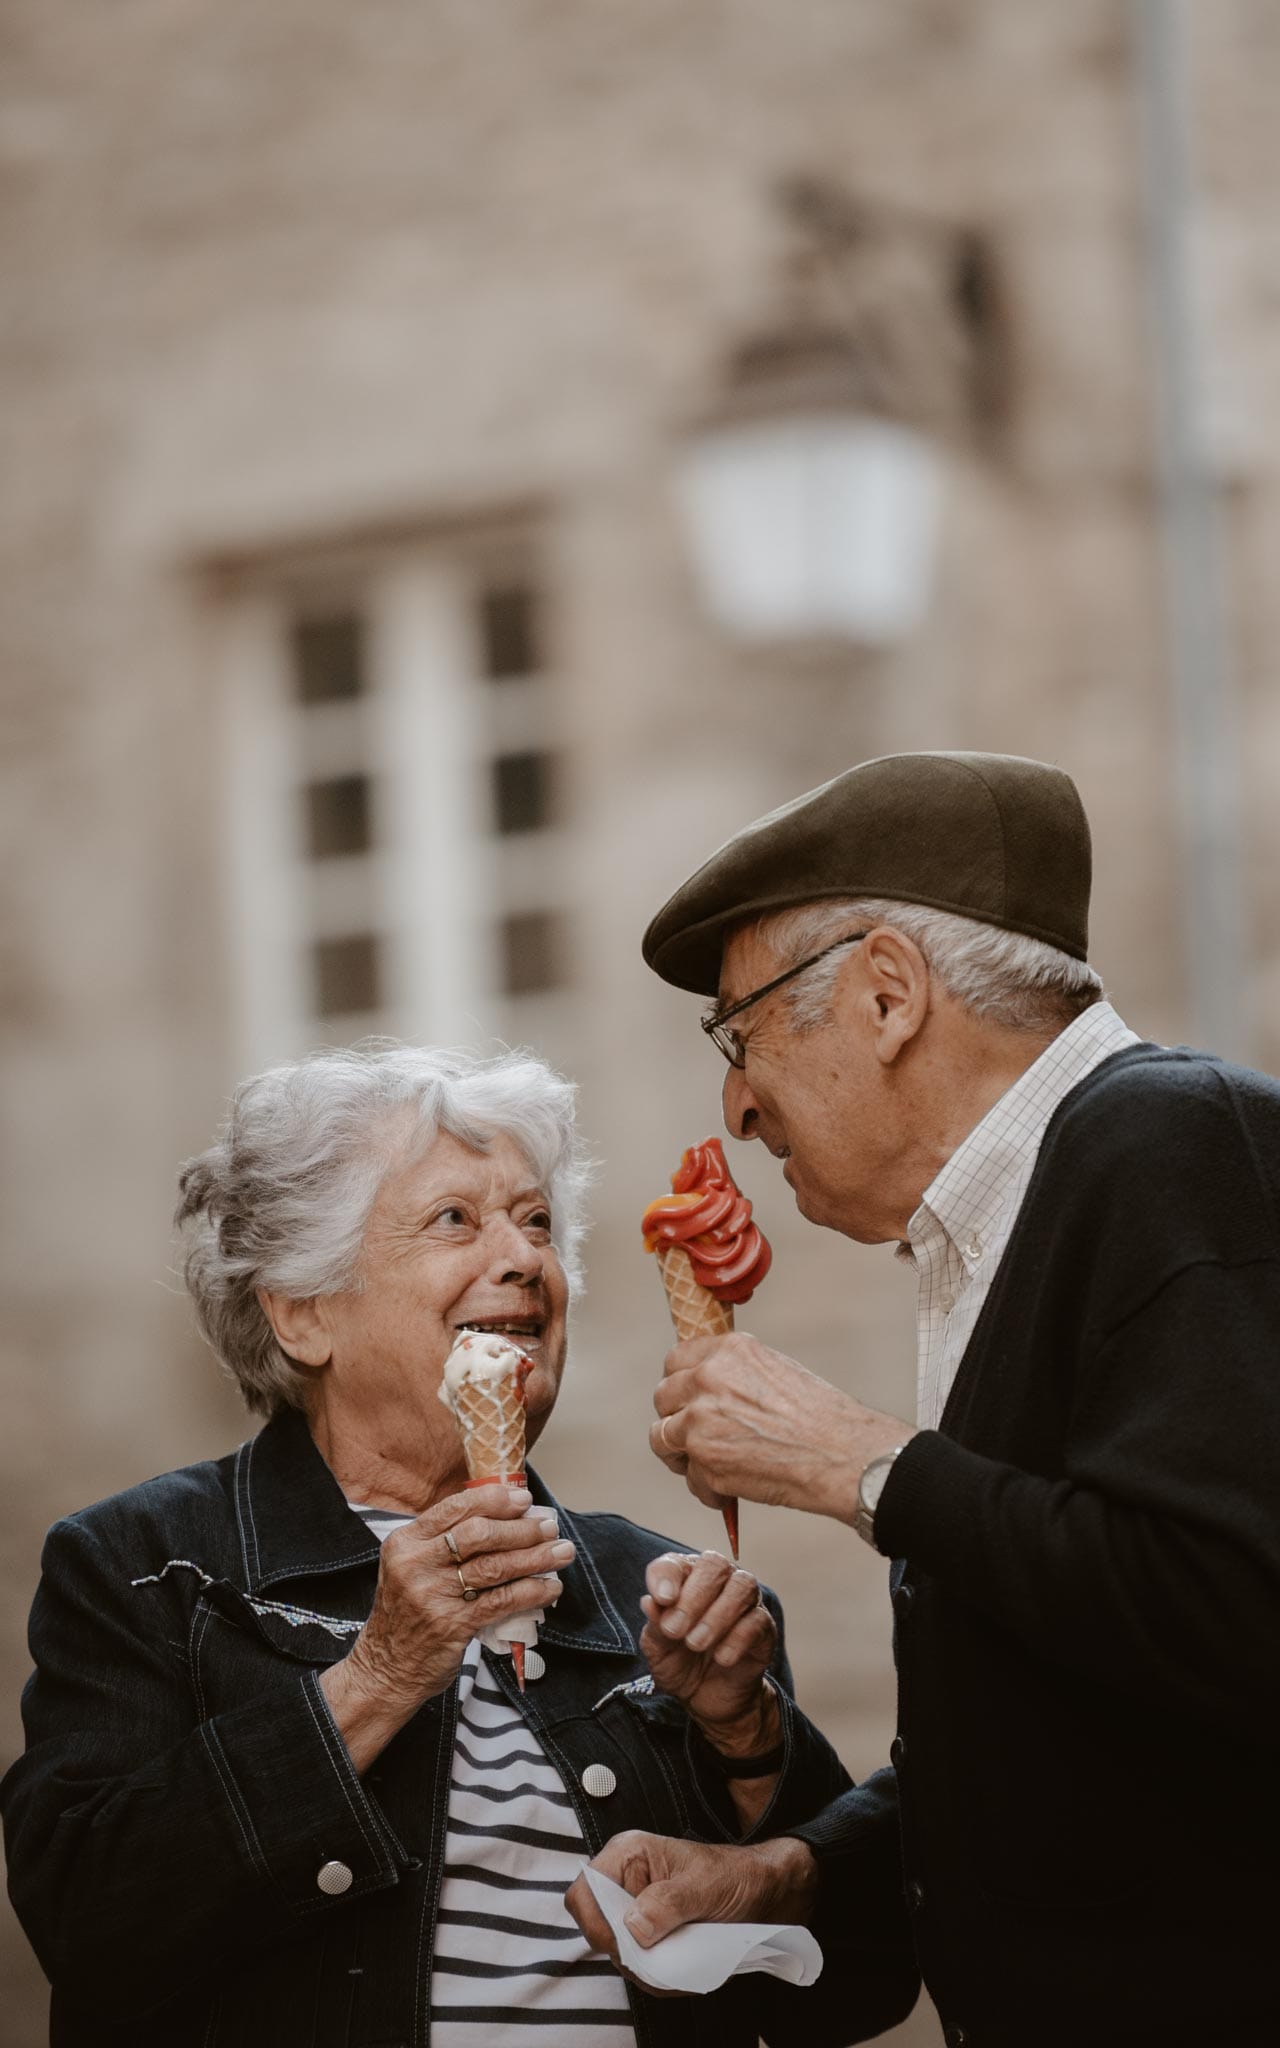 Séance photo lifestyle de grands-parents à Guérande et dans les marais salants par Geoffrey Arnoldy photographe